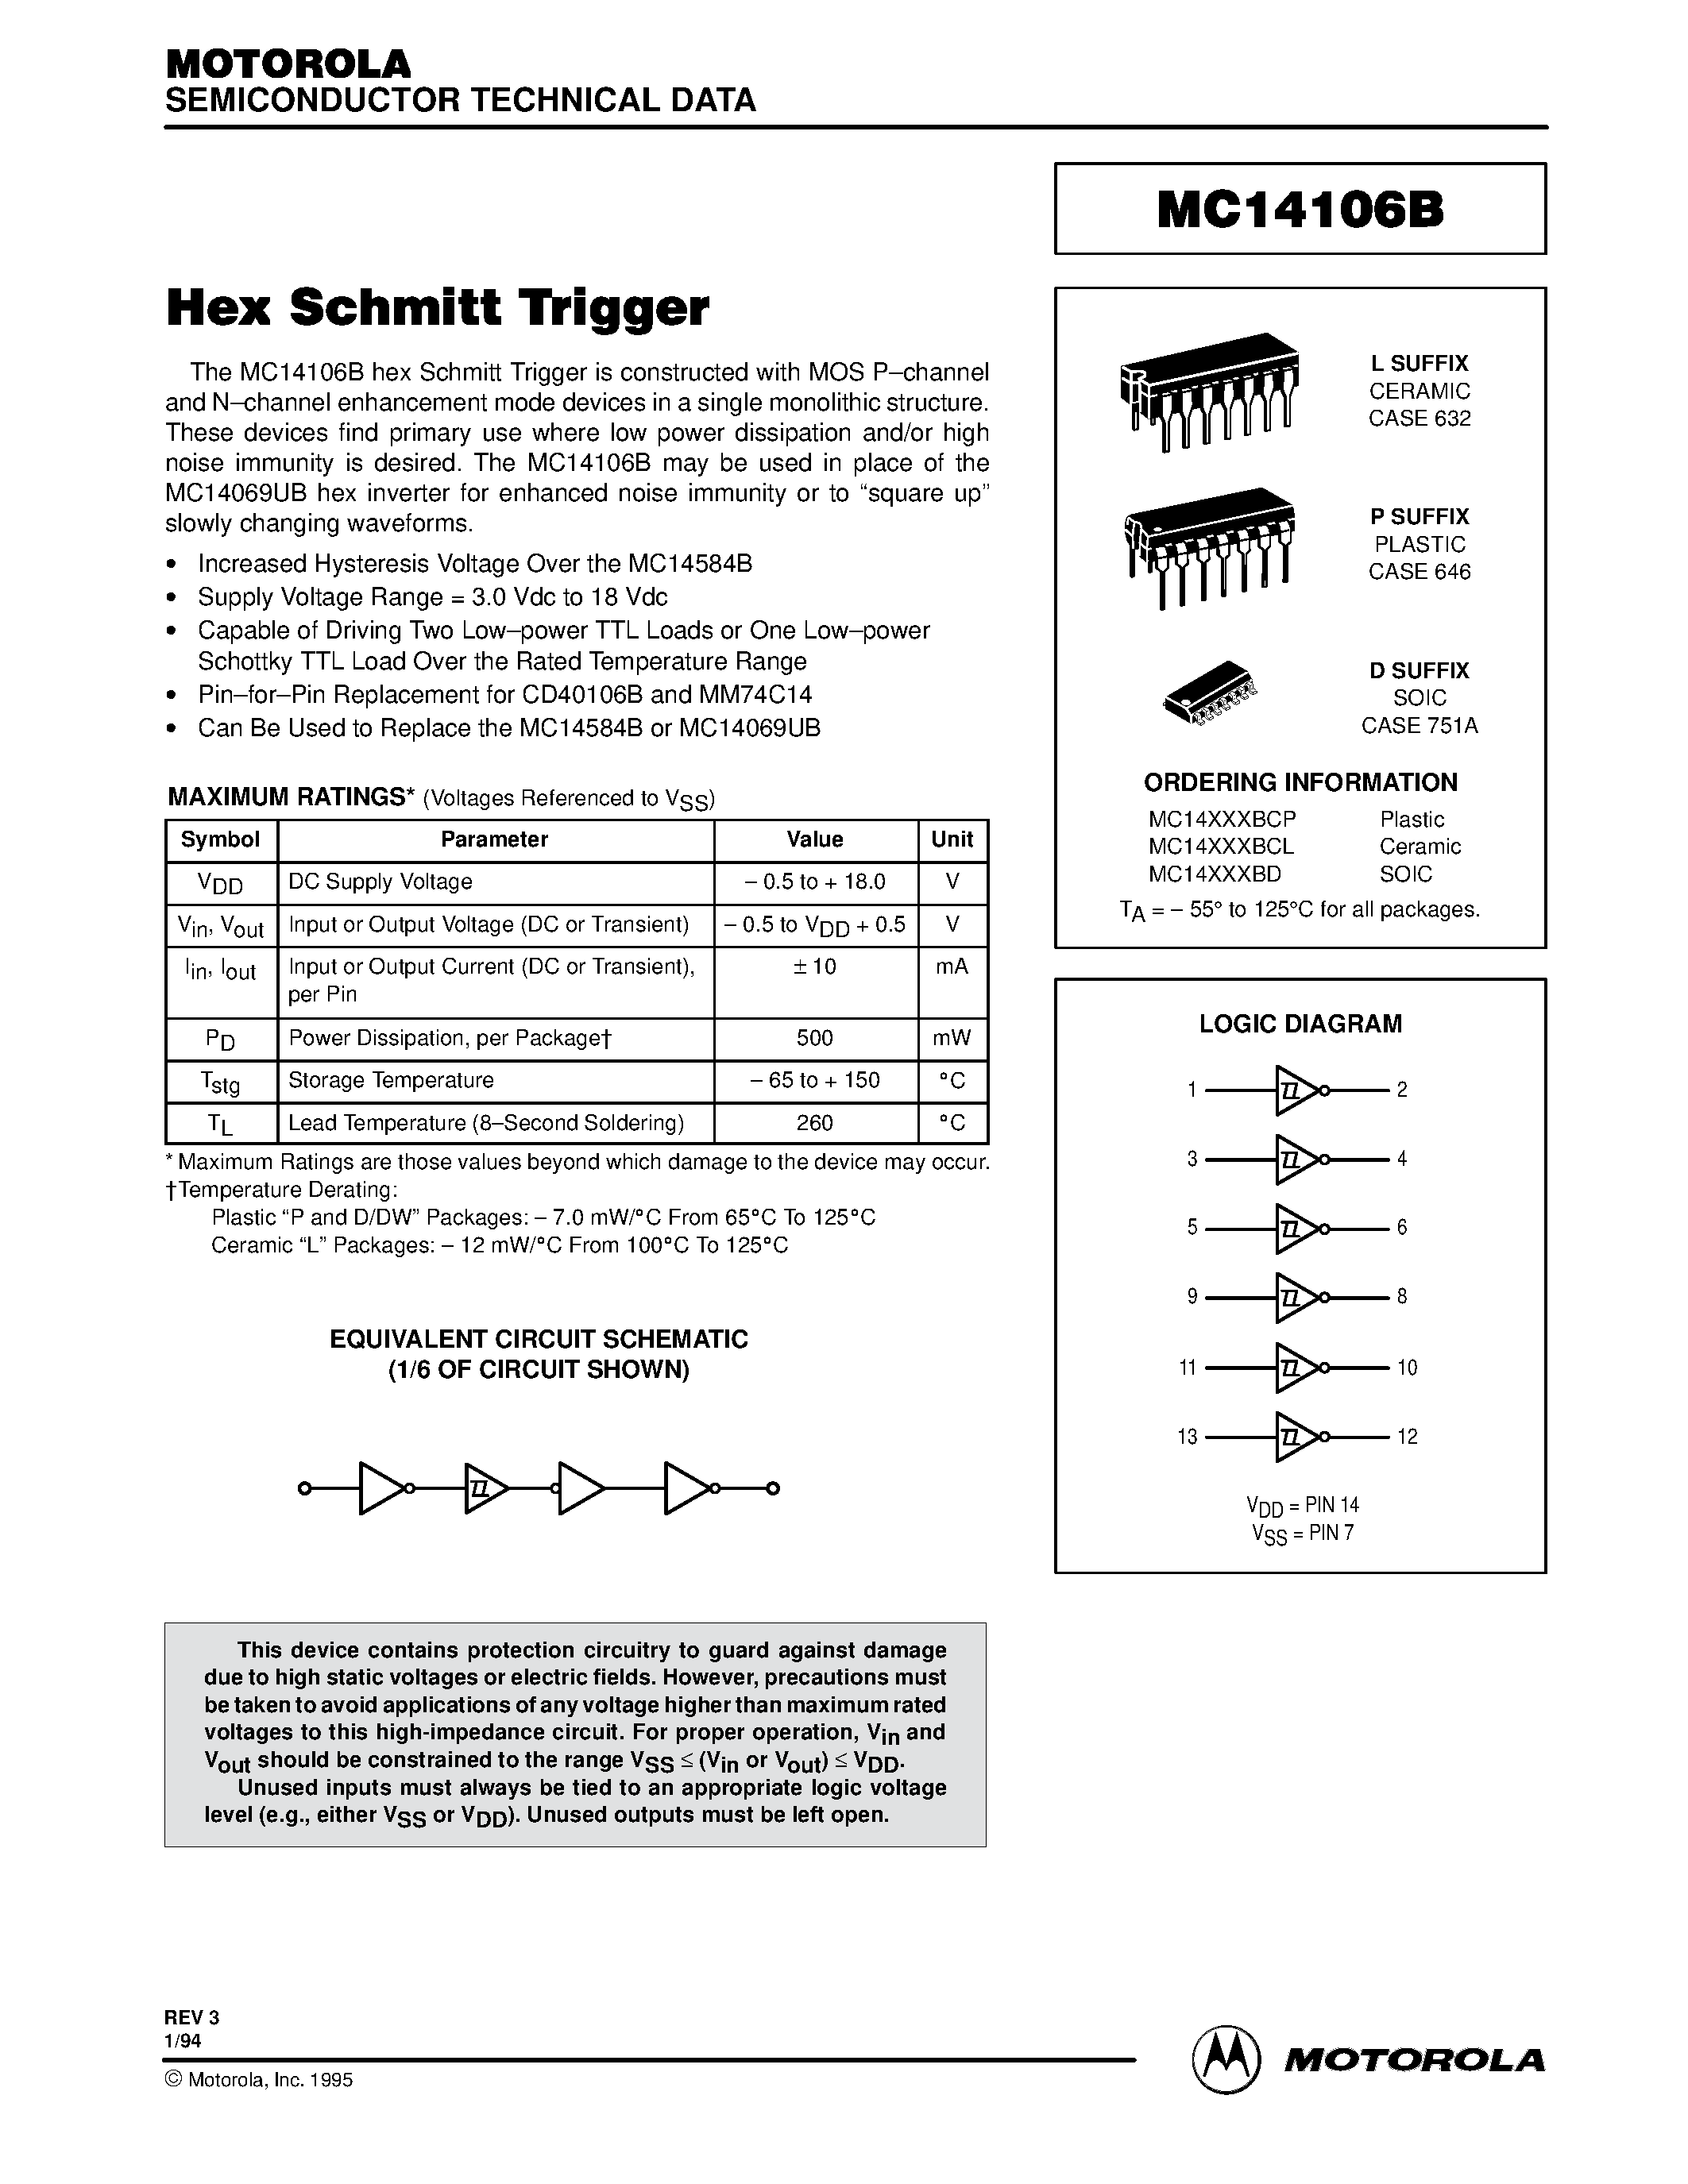 Даташит MC14106BCP - Hex Schmitt Trigger страница 1